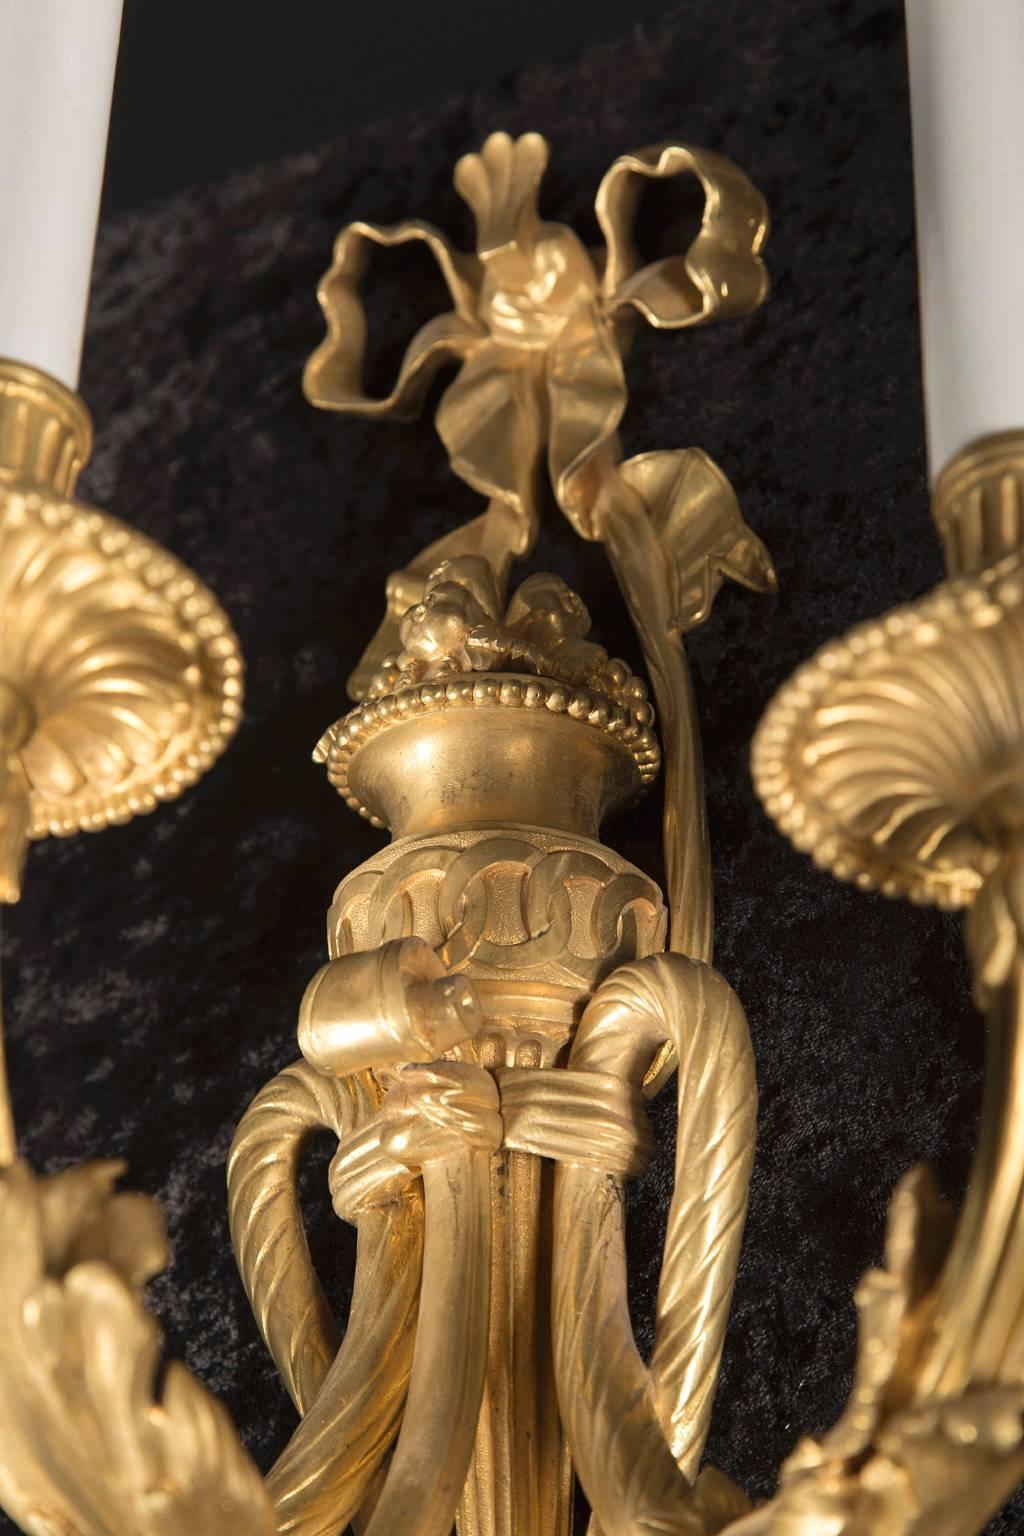 Dieses prächtige Paar von Louis-XVI-Leuchten aus dem 19. Jahrhundert ist aus schöner, fein ziselierter Erzbronze gefertigt. Das Paar hat viele Details: die klassische Louis XVI-Schleife oben, die drei Branch-Arme, die mit einem geknüpften